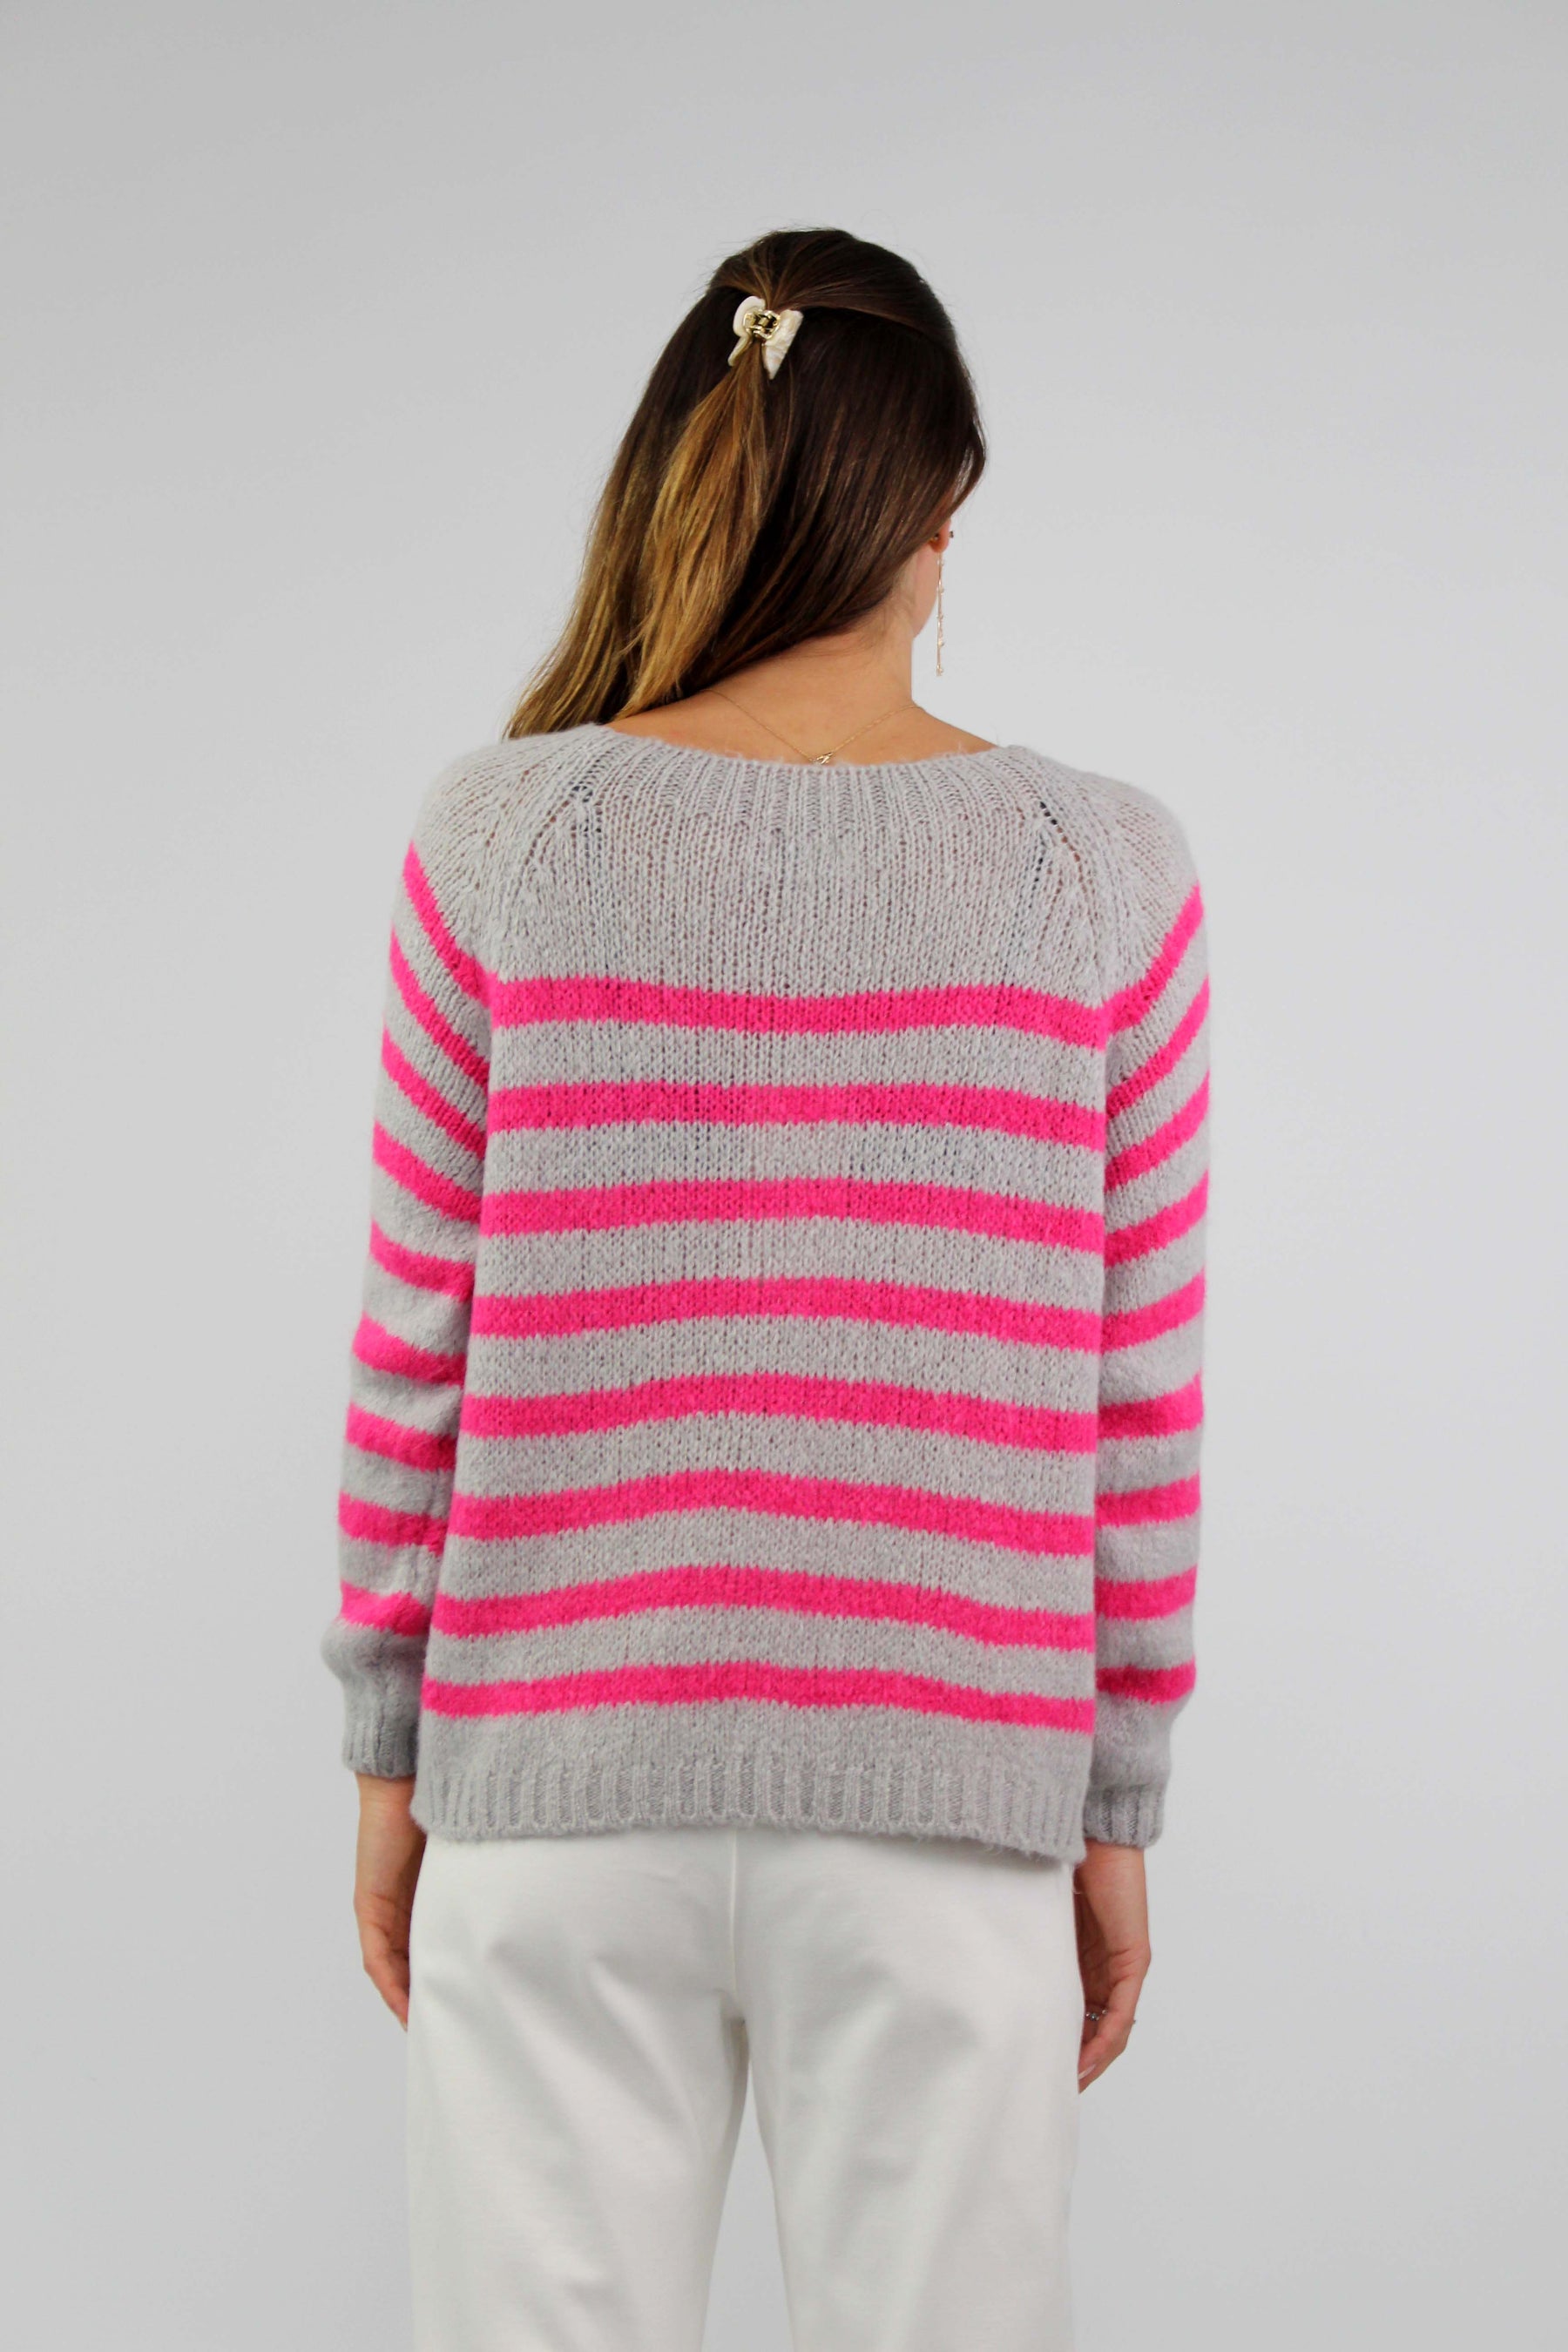 Pullover Streifenoptik - Grau/Pink